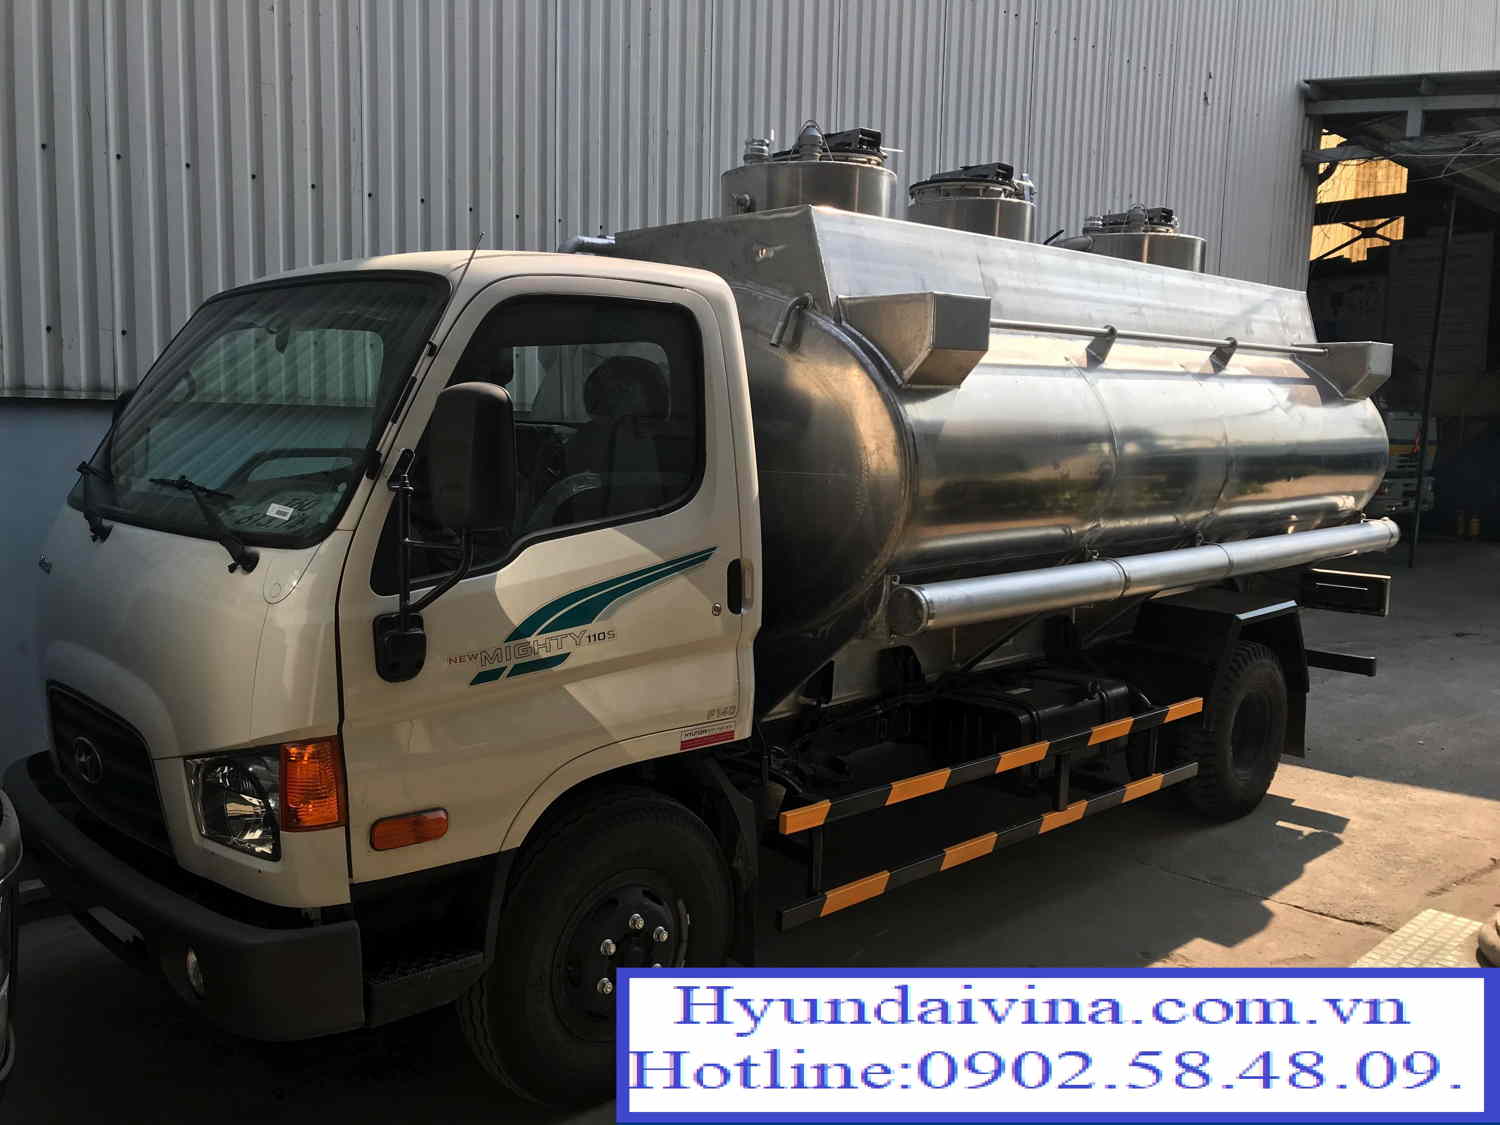 Xe tải Xi tec xăng dầu Hyundai New Mighty 110S 